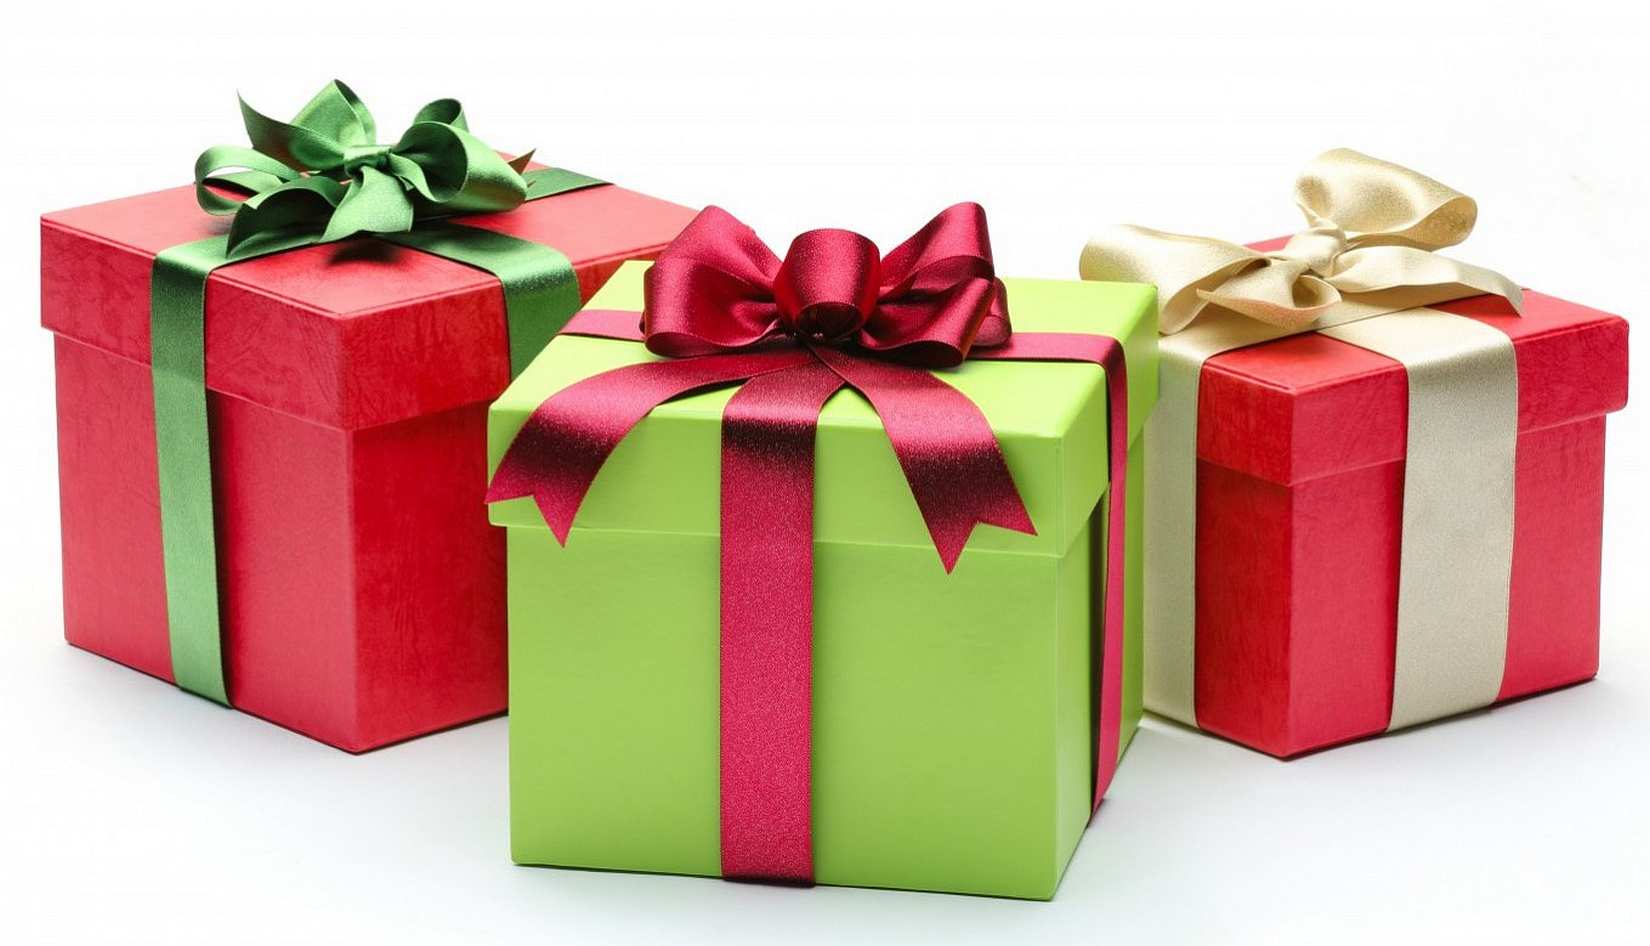 Kinds of presents. Подарок. Коробки для подарков. Красивая подарочная коробка. Коробки с подарками на белом фоне.